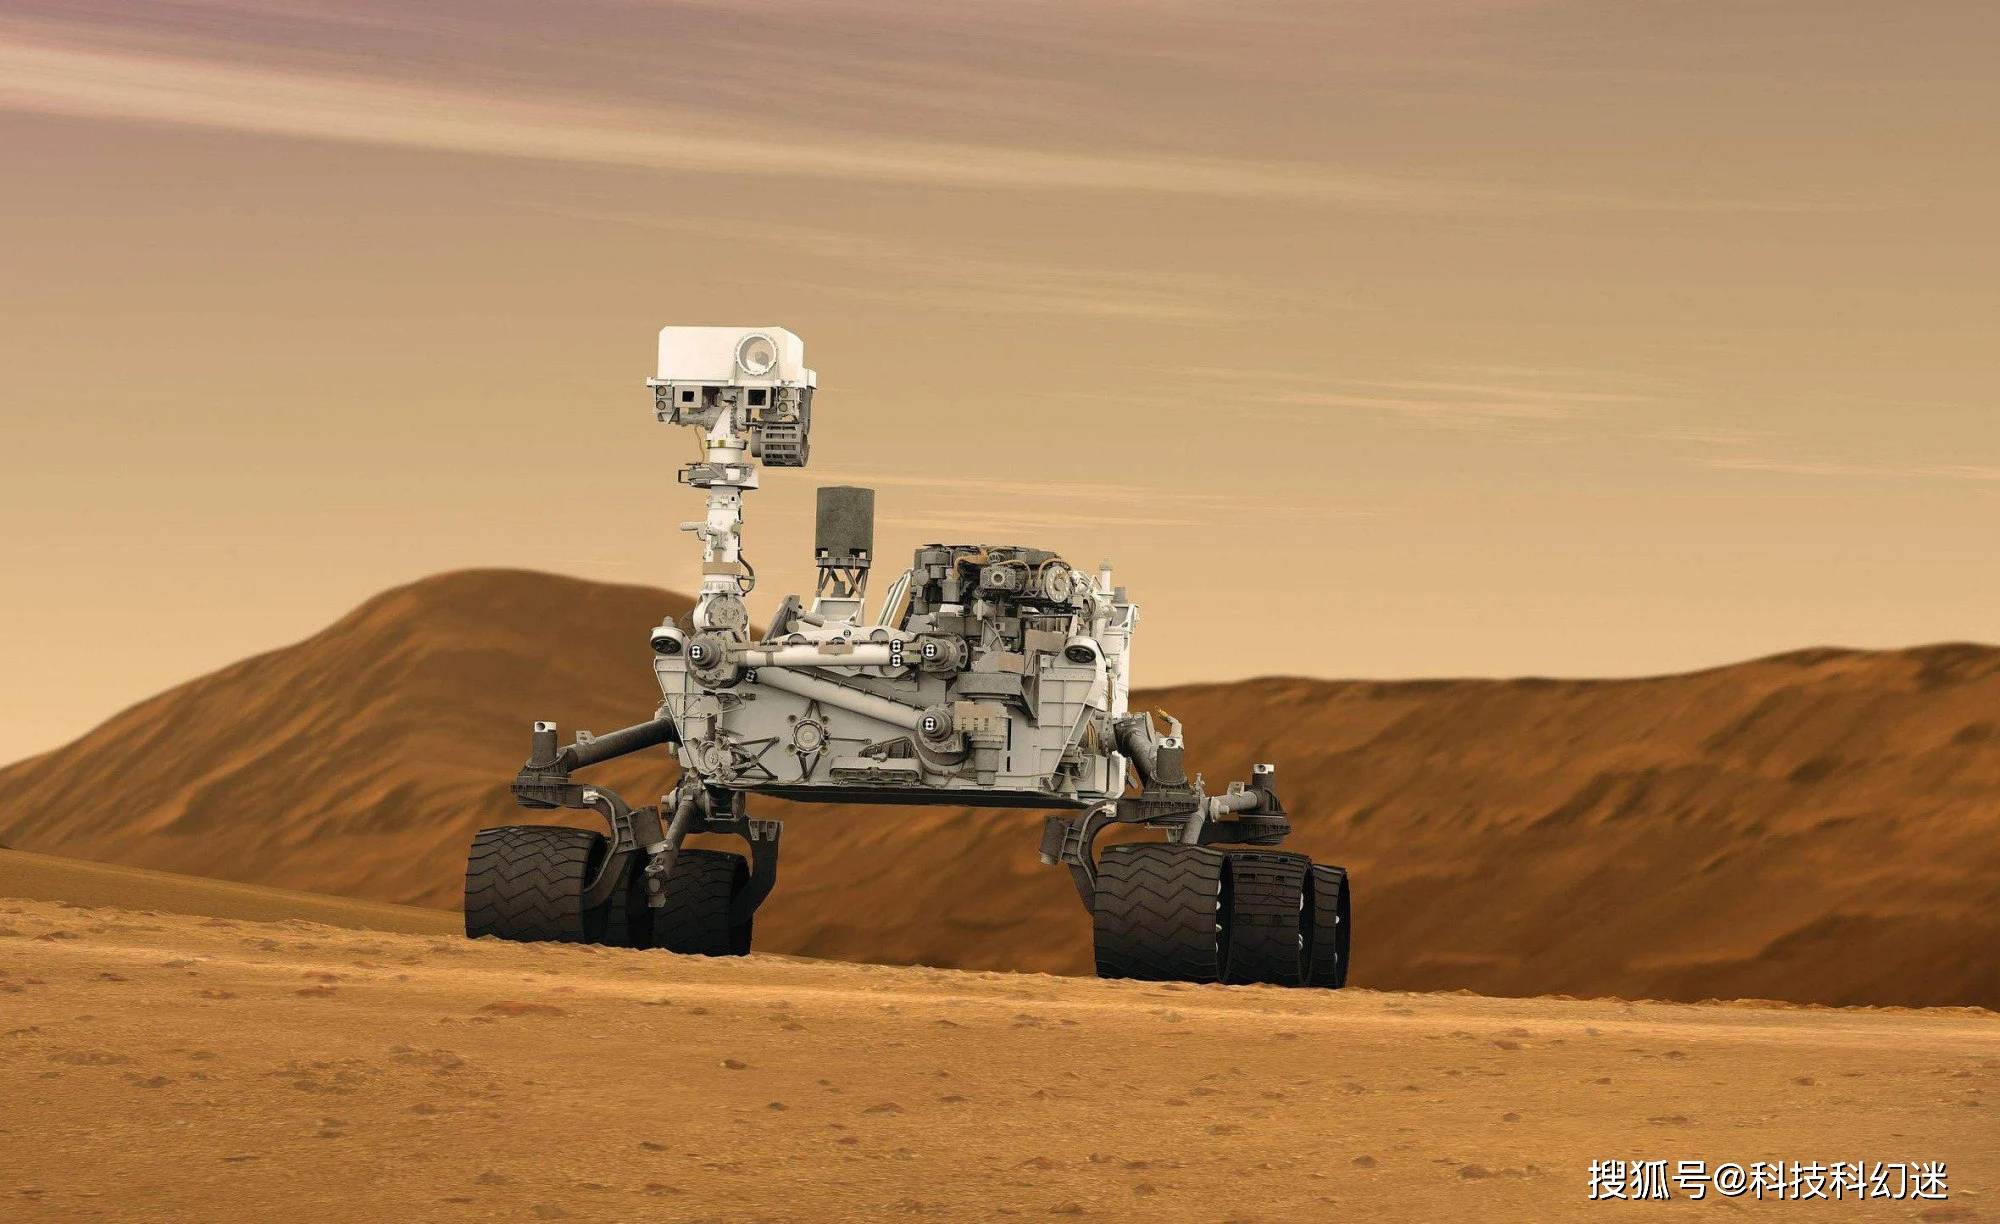 原创火星表面发现"一团火"?毅力号火星车已装上火箭,发射倒计时